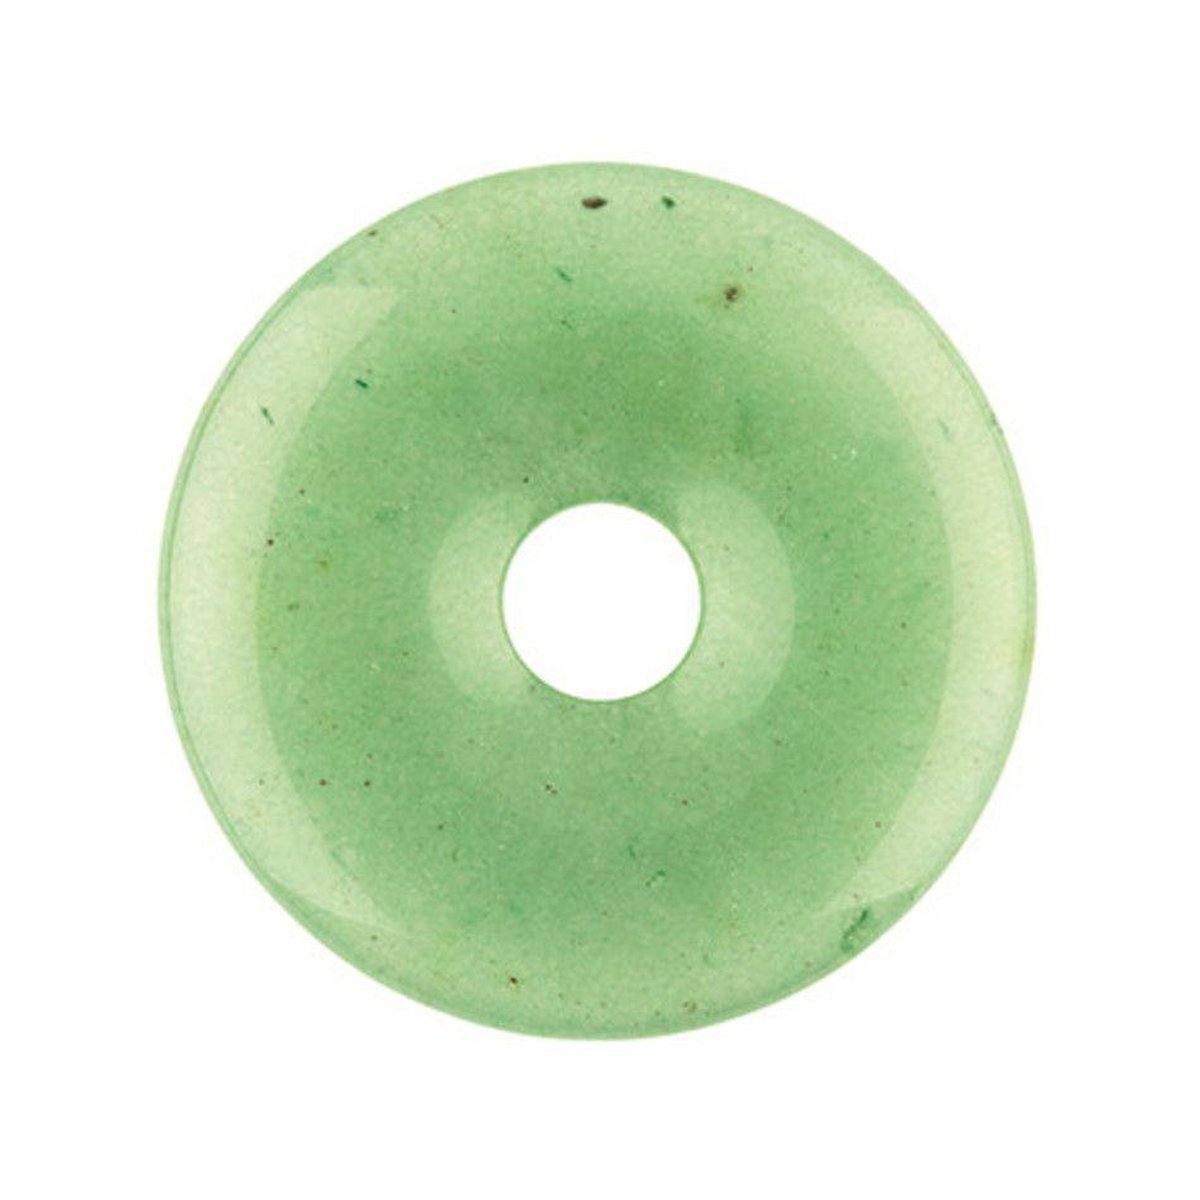 Ruben Robijn Aventurijn groen donut 30 mm